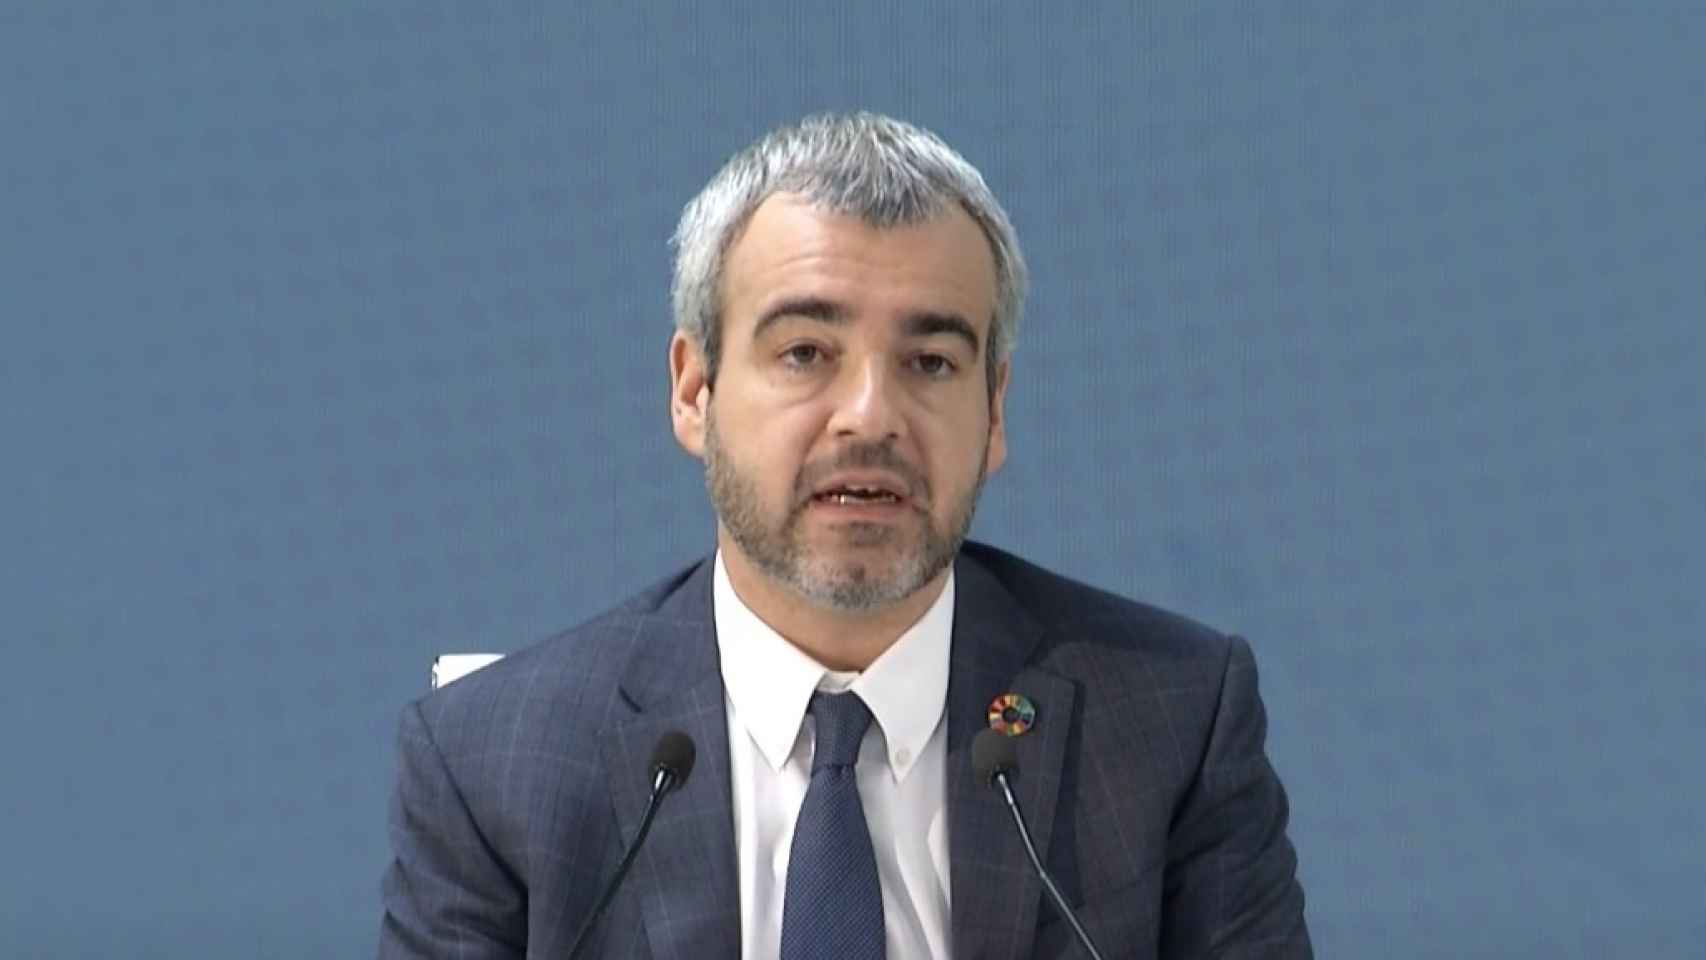 Maurici Lucena, presidente y consejero delegado de Aena.